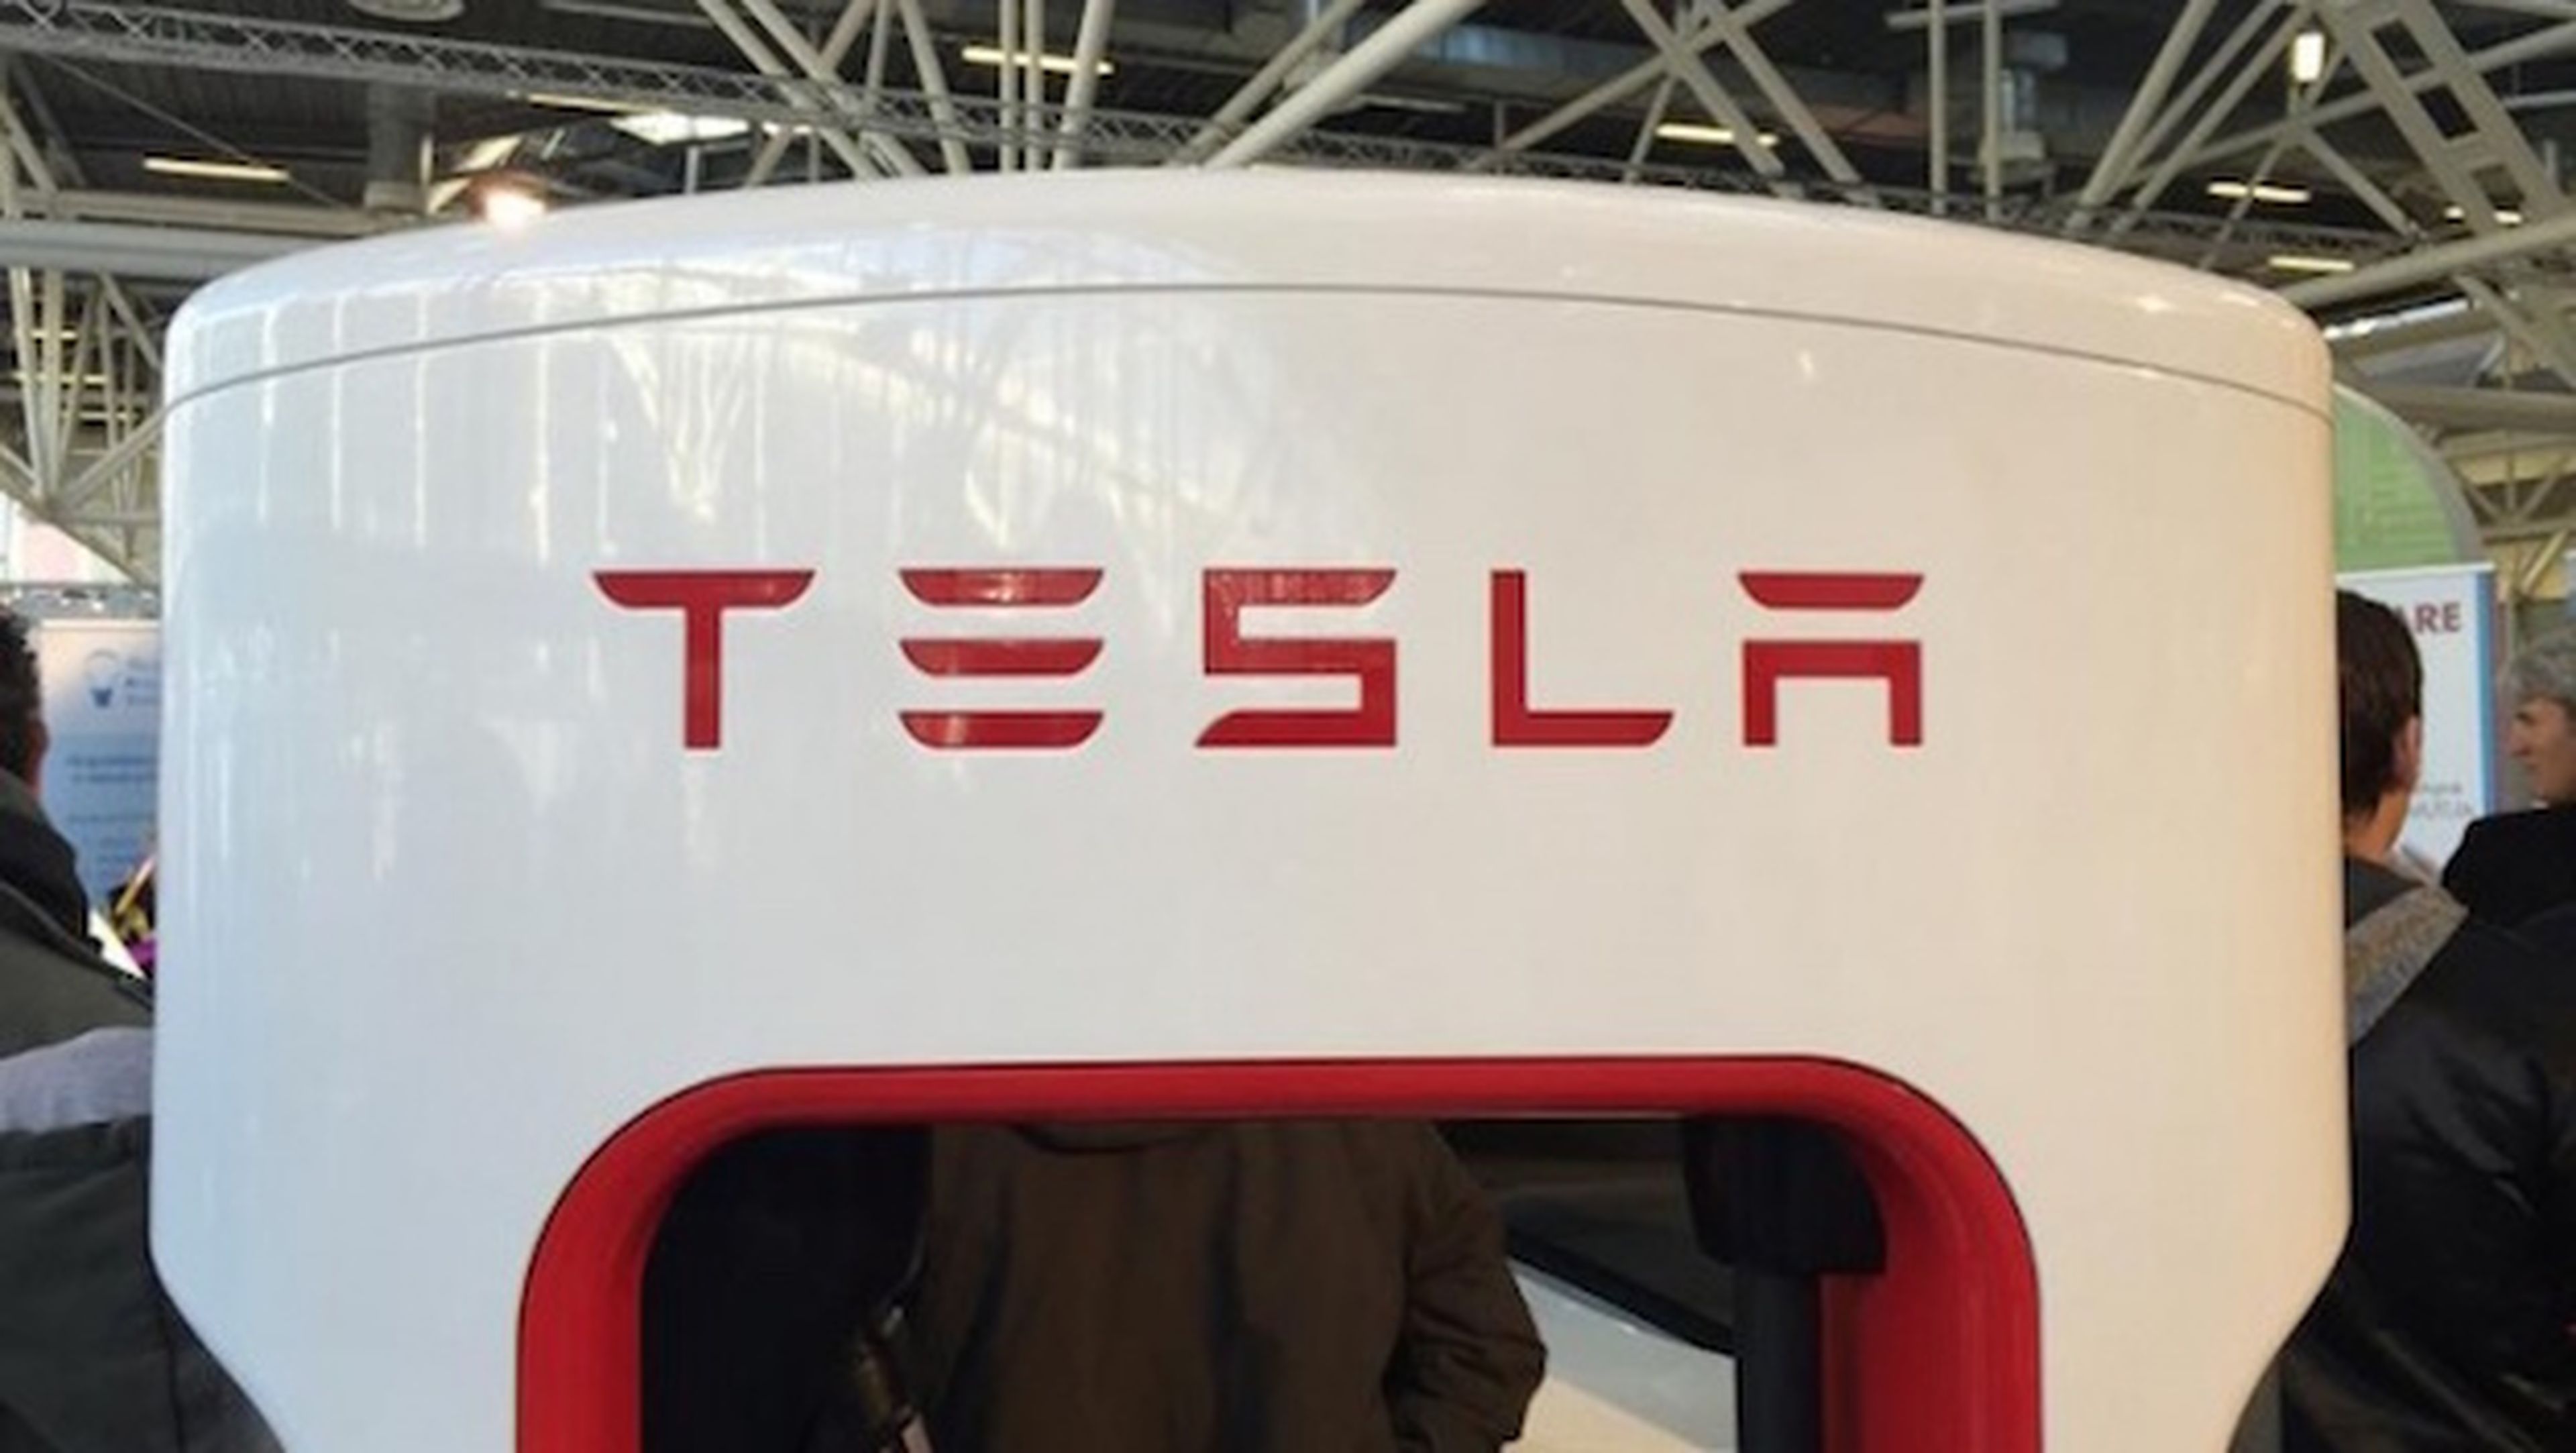 Tesla anunciará batería para el hogar próximamente